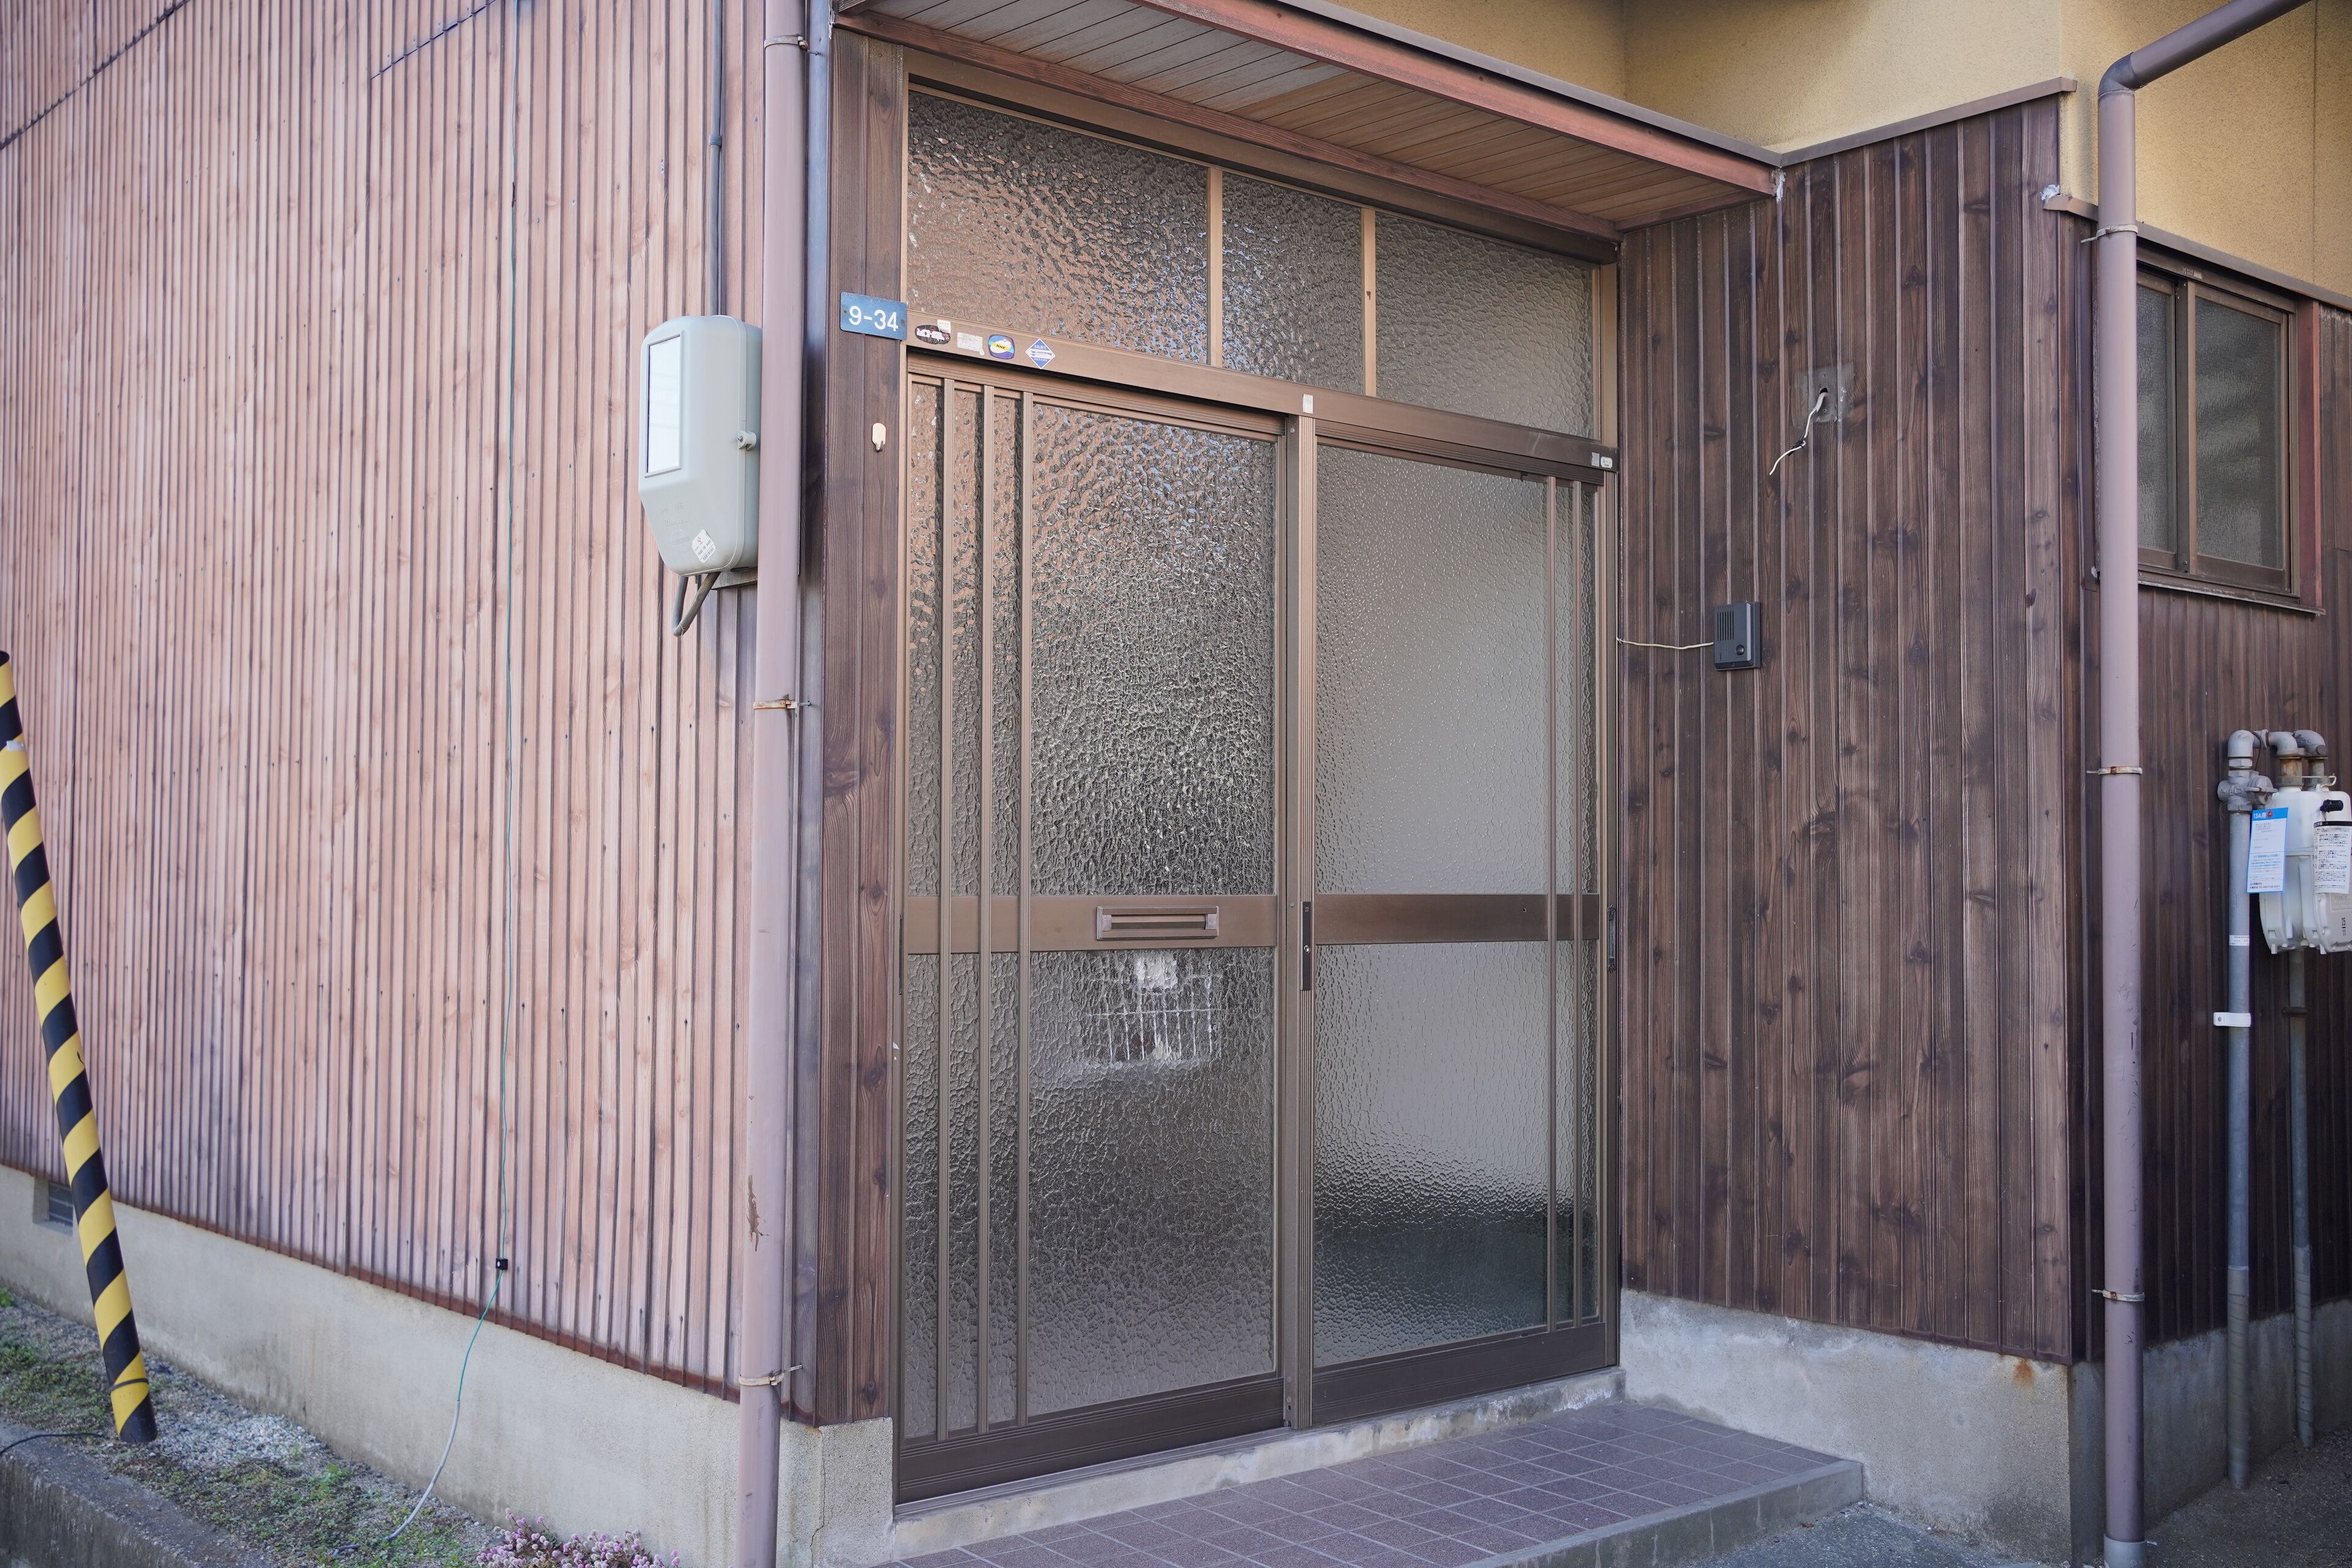 Setouchi House